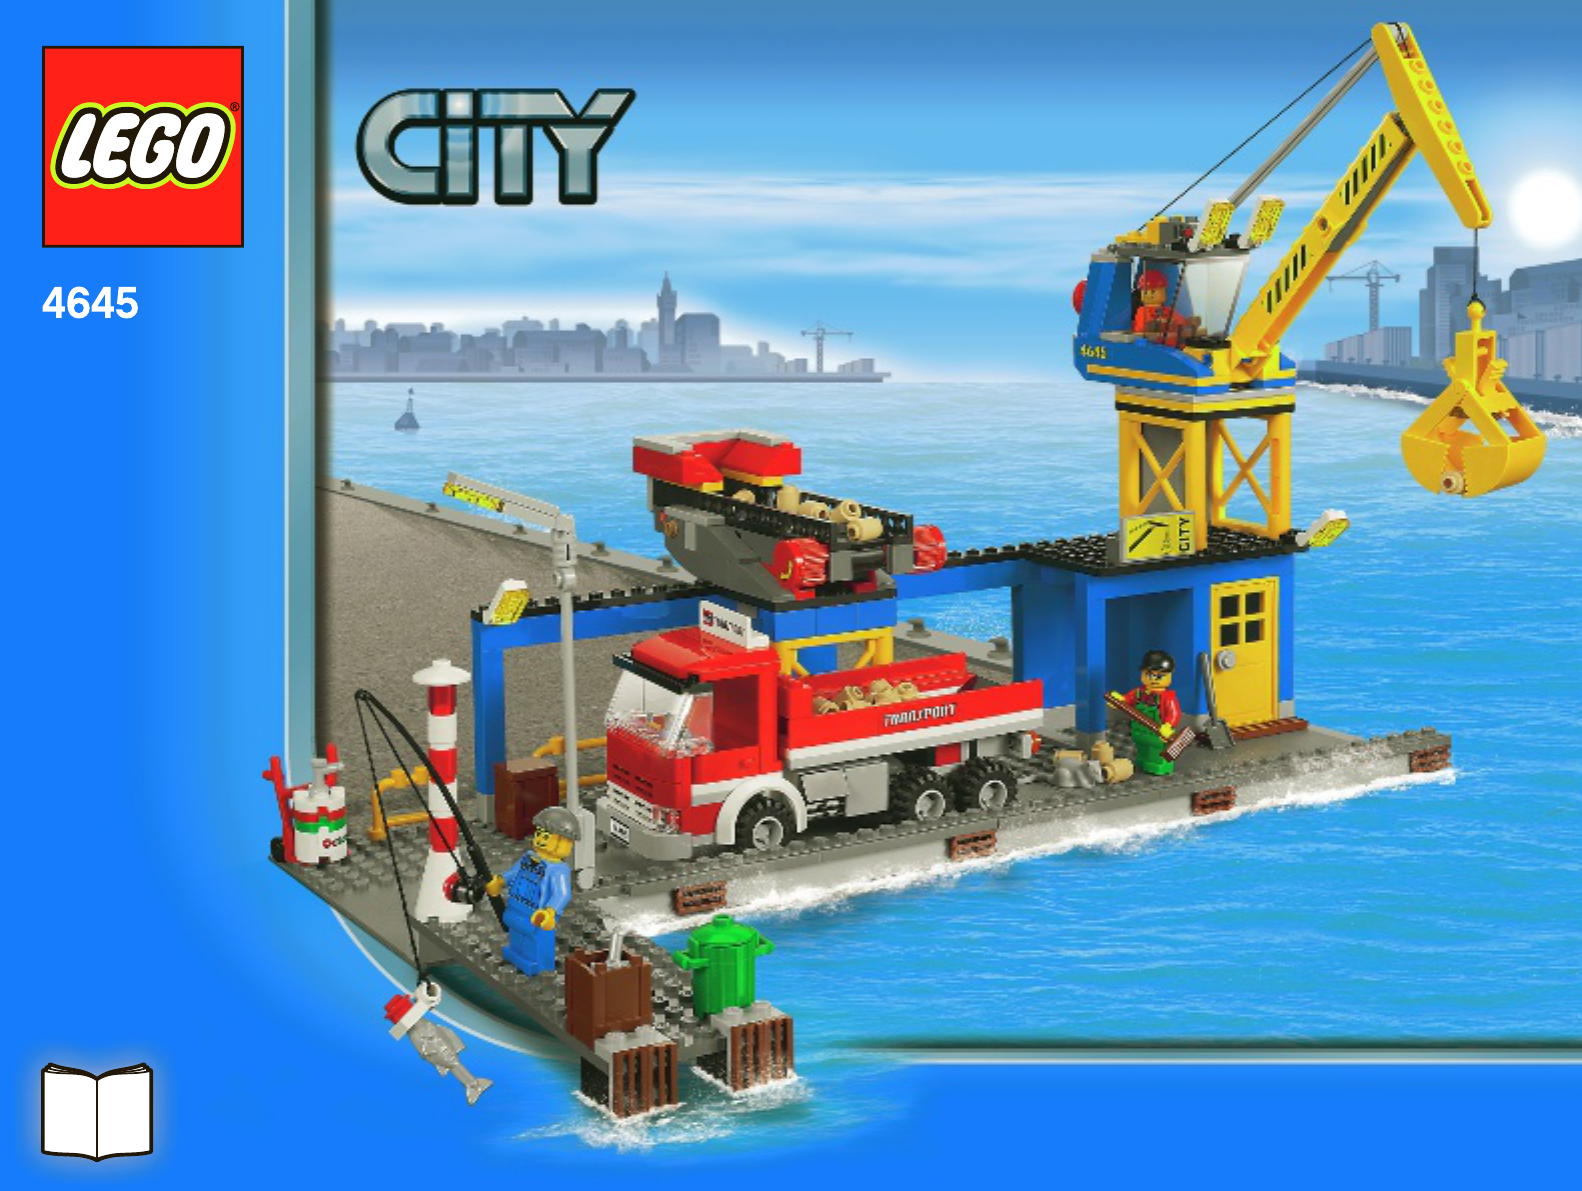 Handleiding Lego City Harbour - Harbour 4645 (pagina 1 van 80